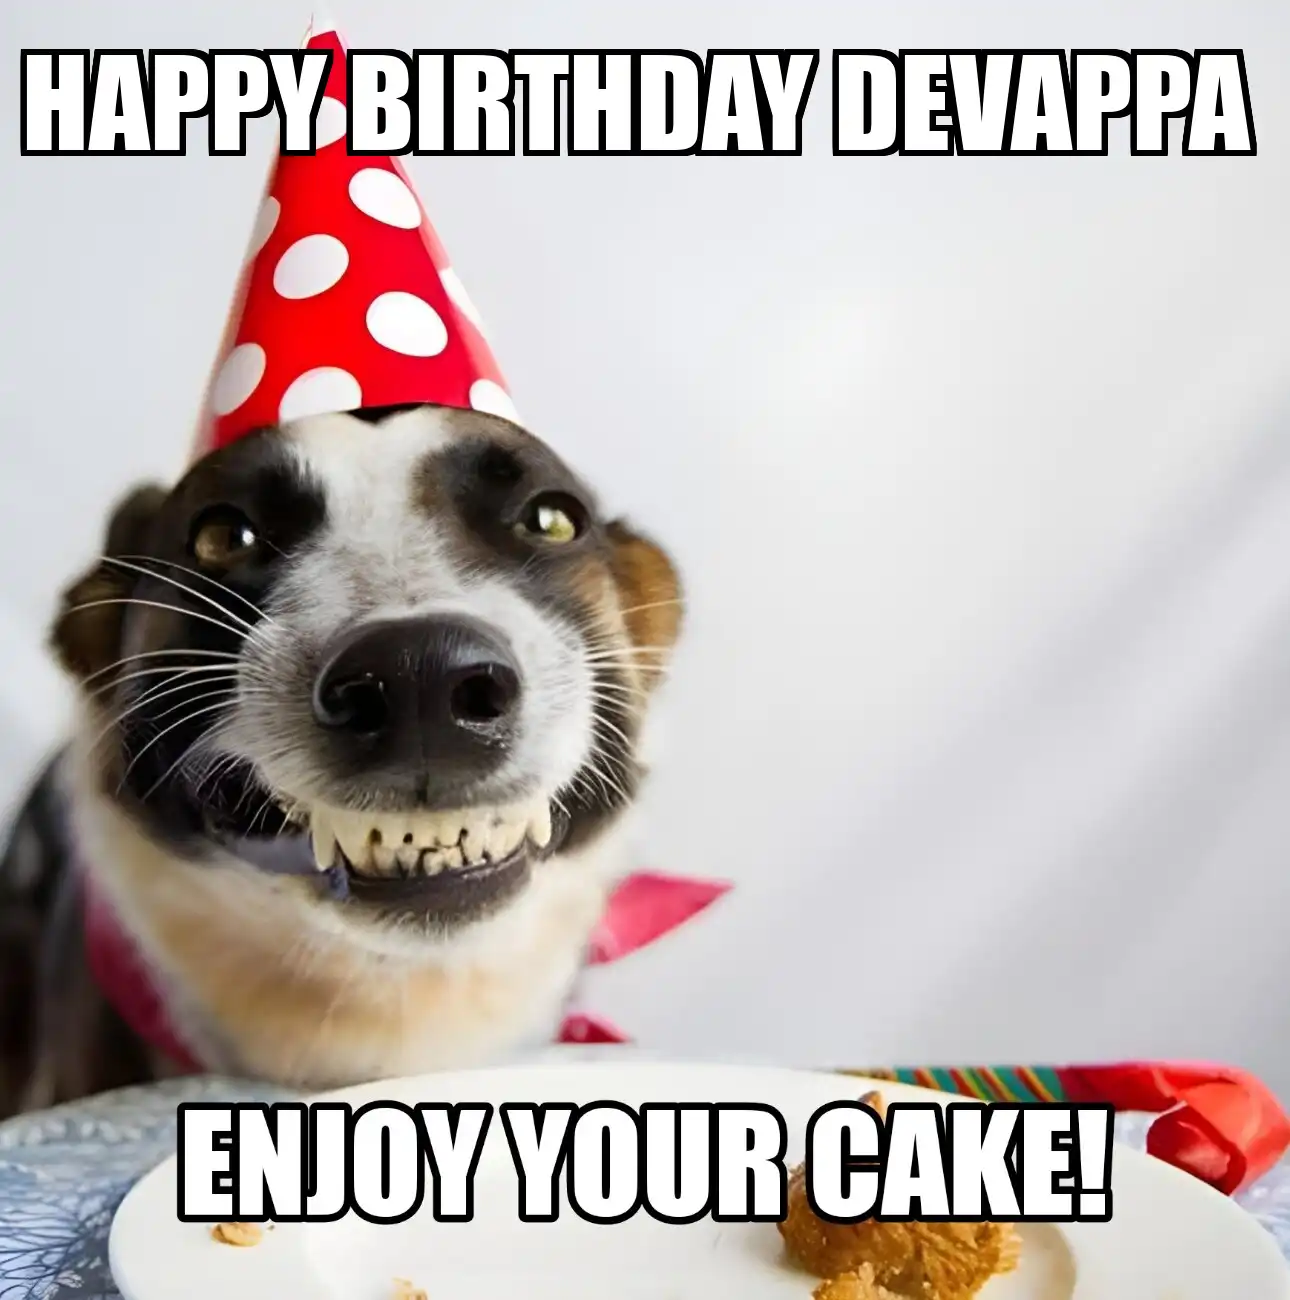 Happy Birthday Devappa Enjoy Your Cake Dog Meme